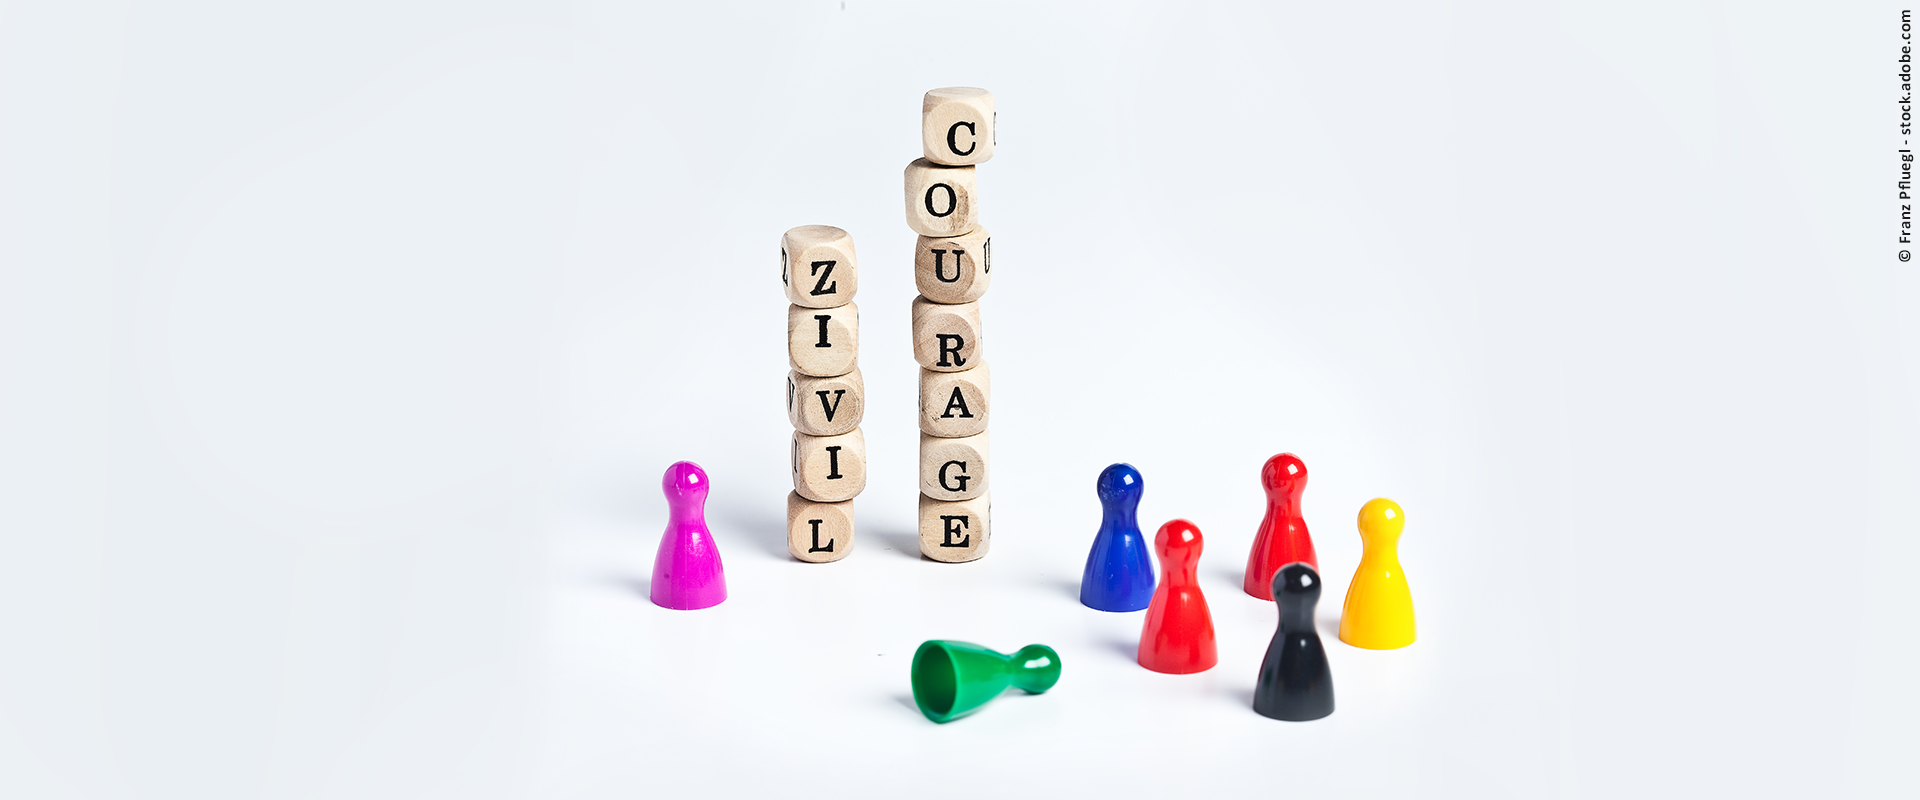 Übereinander gestapelte Buchstabenwürfel mit dem Schriftzug "Zivilcourage", daneben sind bunte Spielfiguren zu sehen